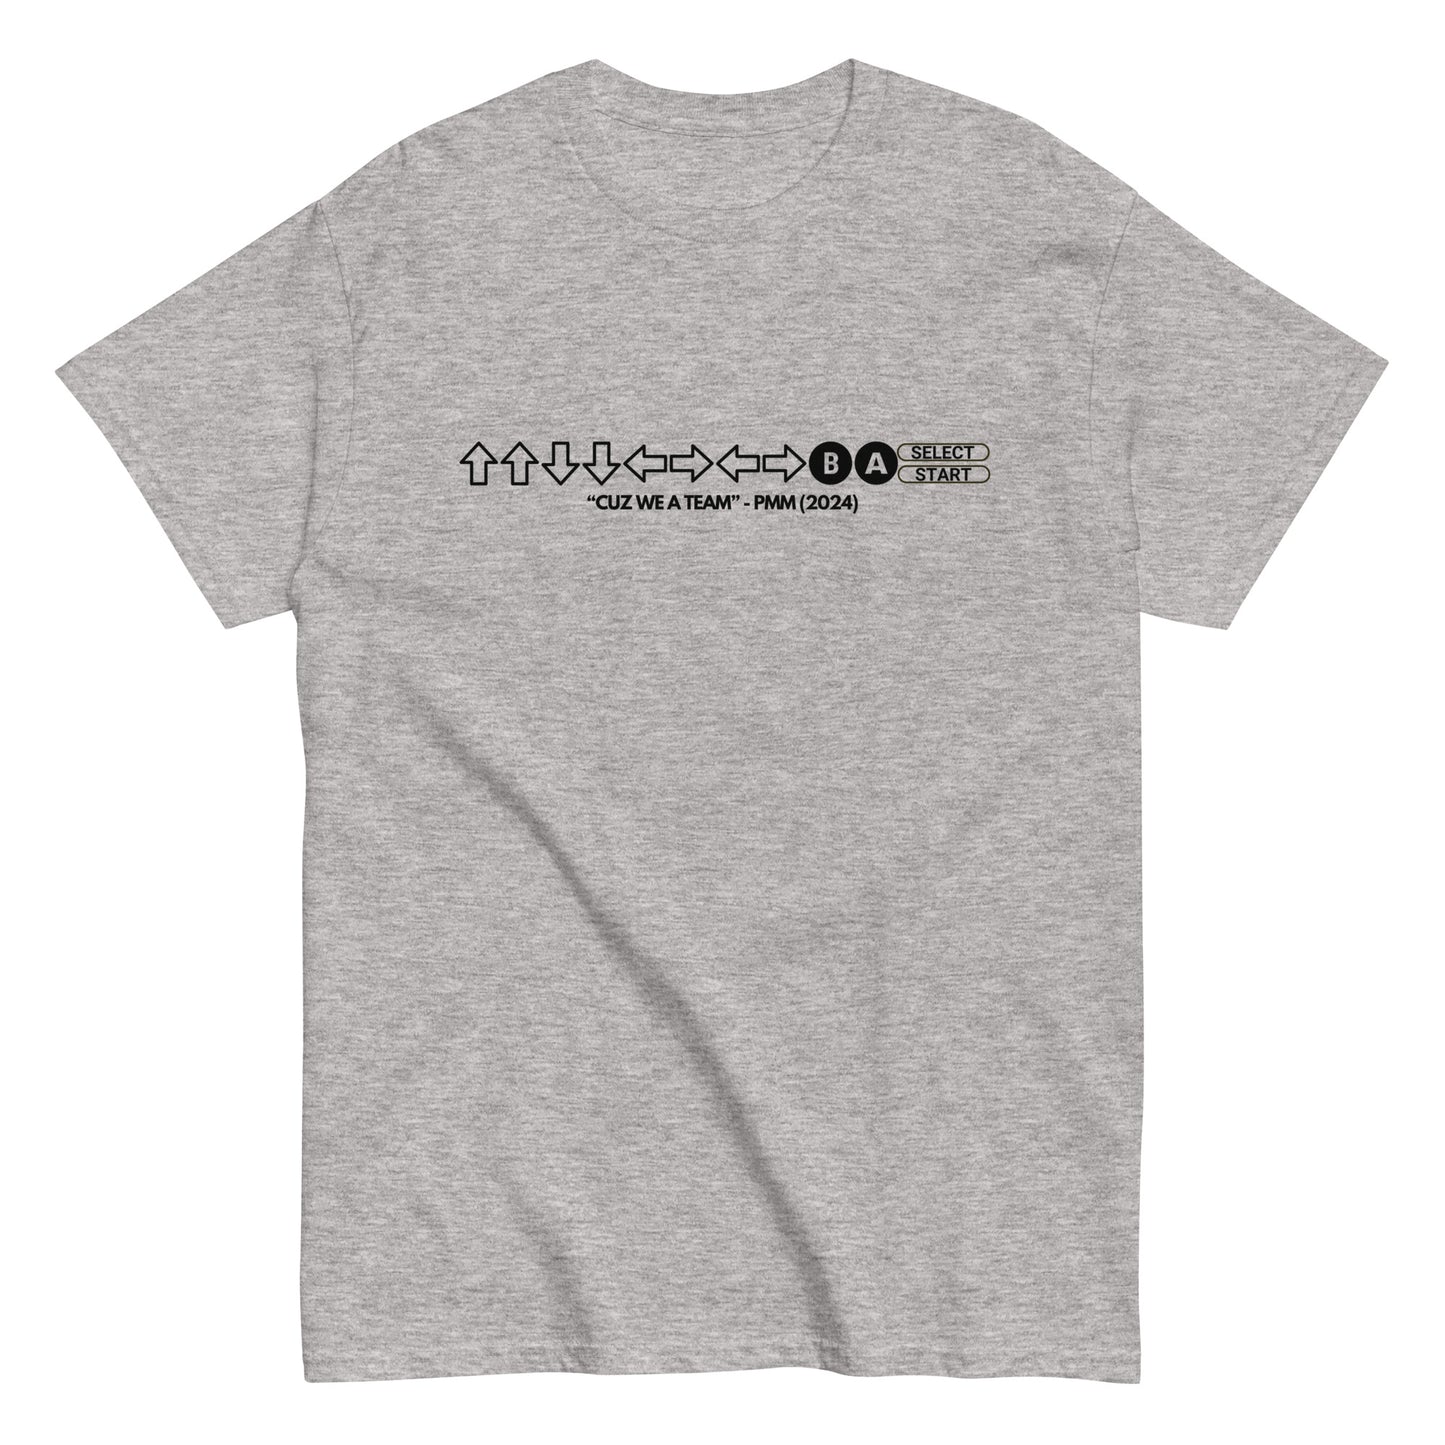 PMM Cheat Code T-Shirt (black text)